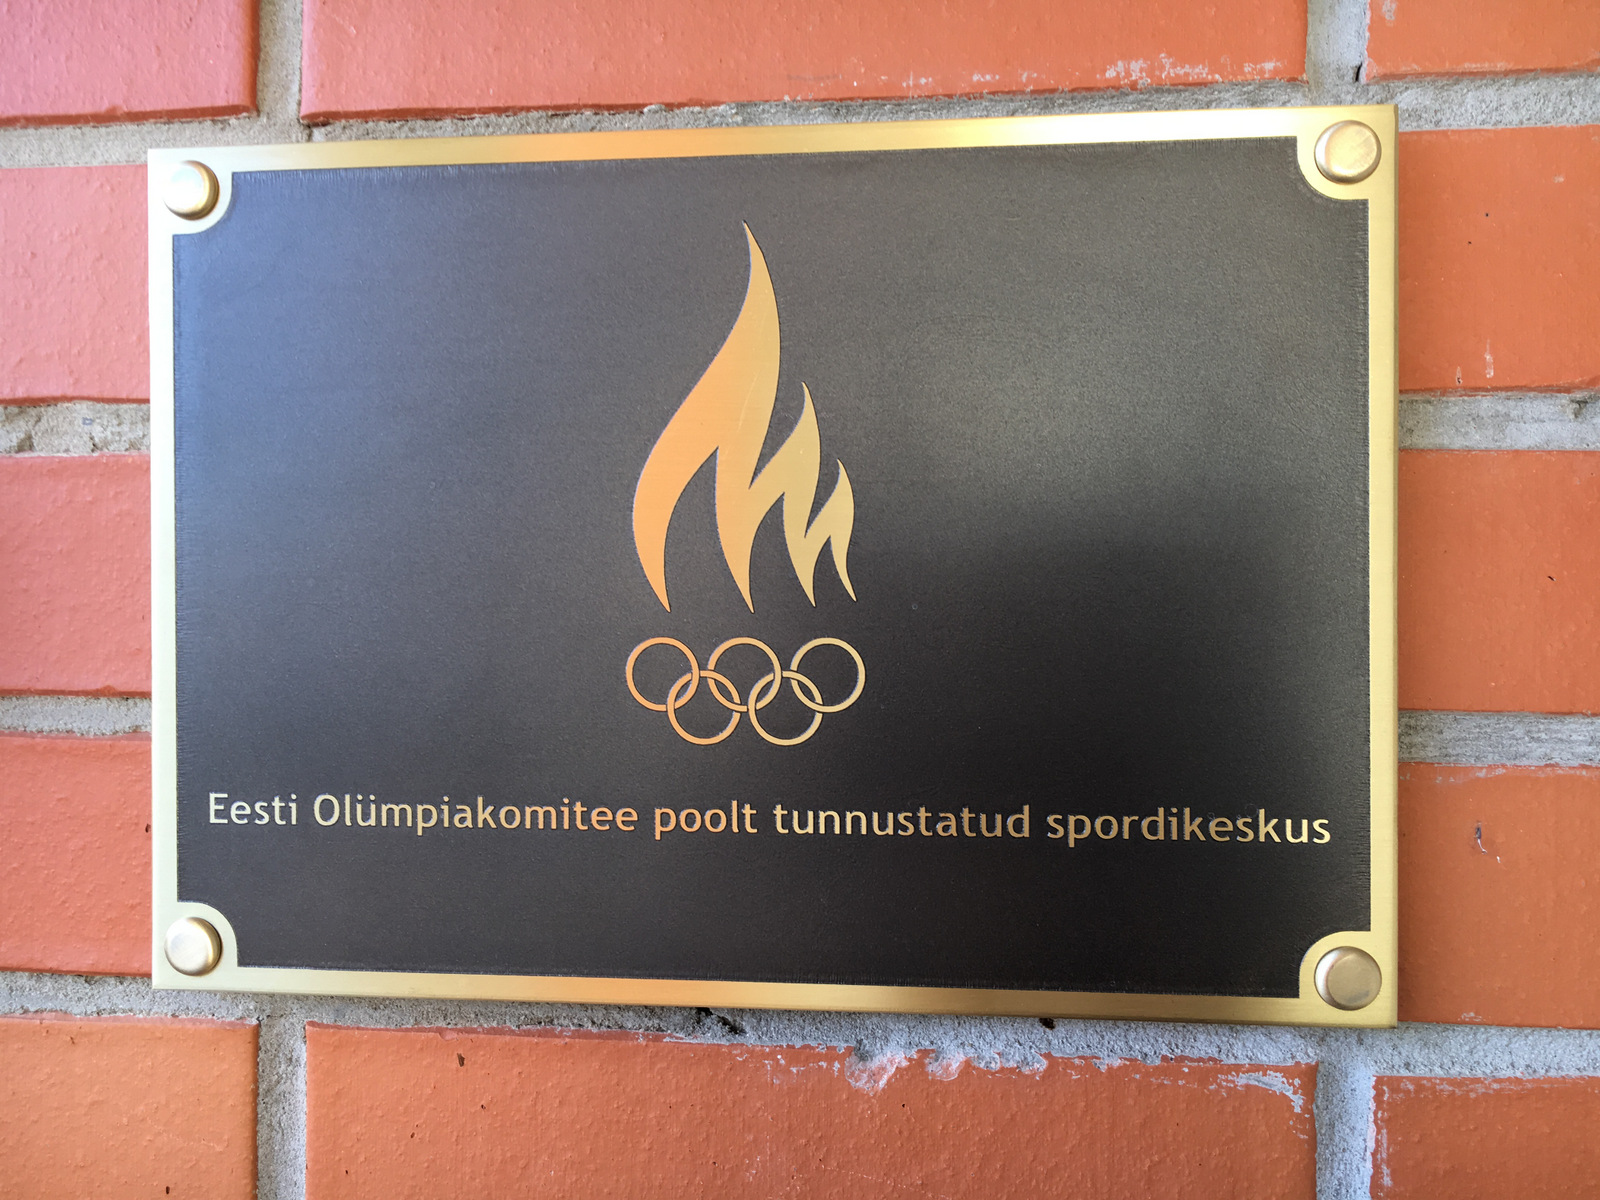 Eesti Olümpiakomitee tunnustab maakondlikke spordikeskusi